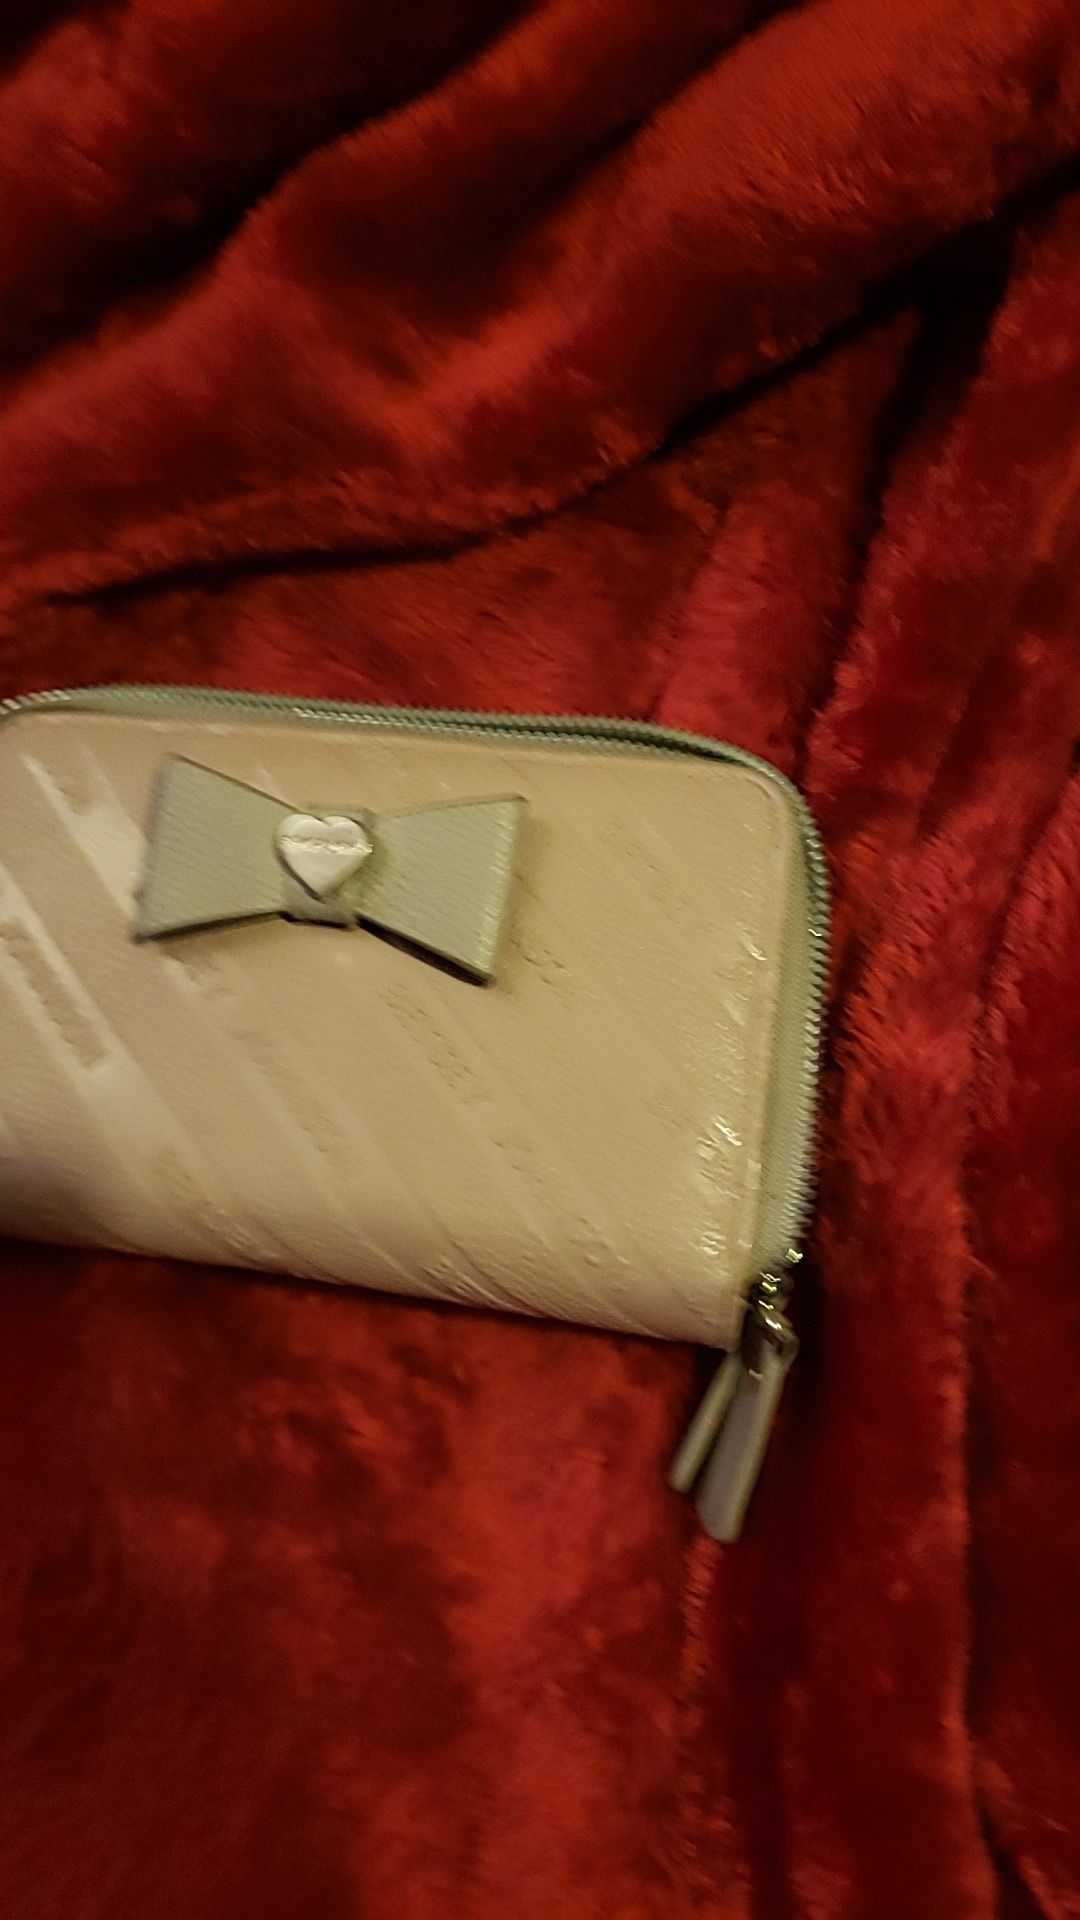 Betsy Johnson wallet